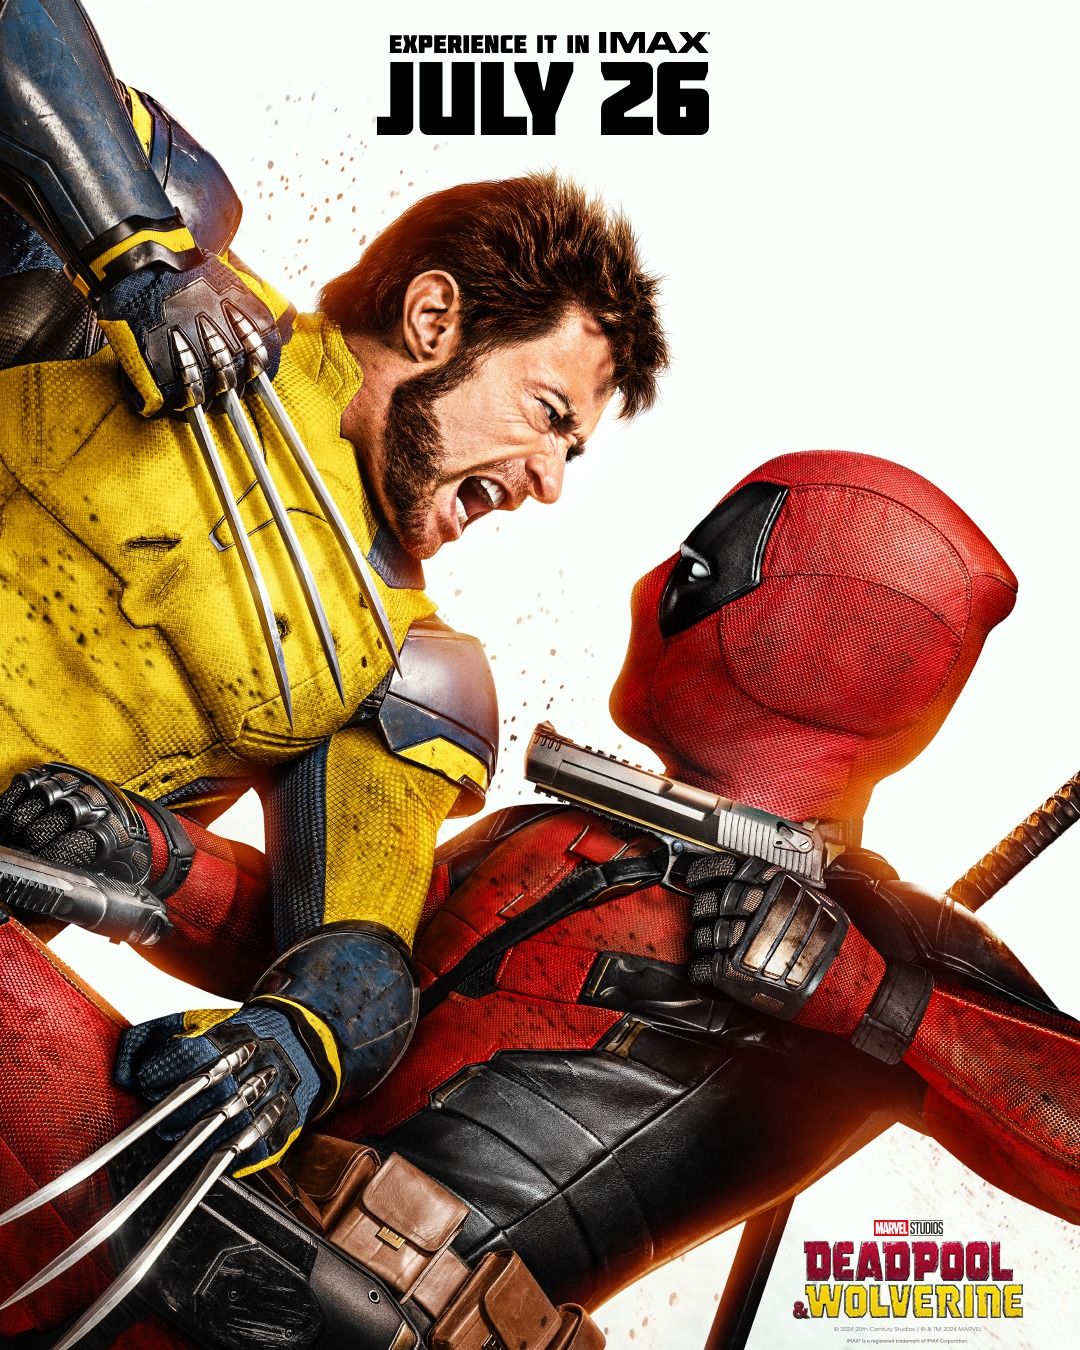 Deadpool & Wolverine premiere show